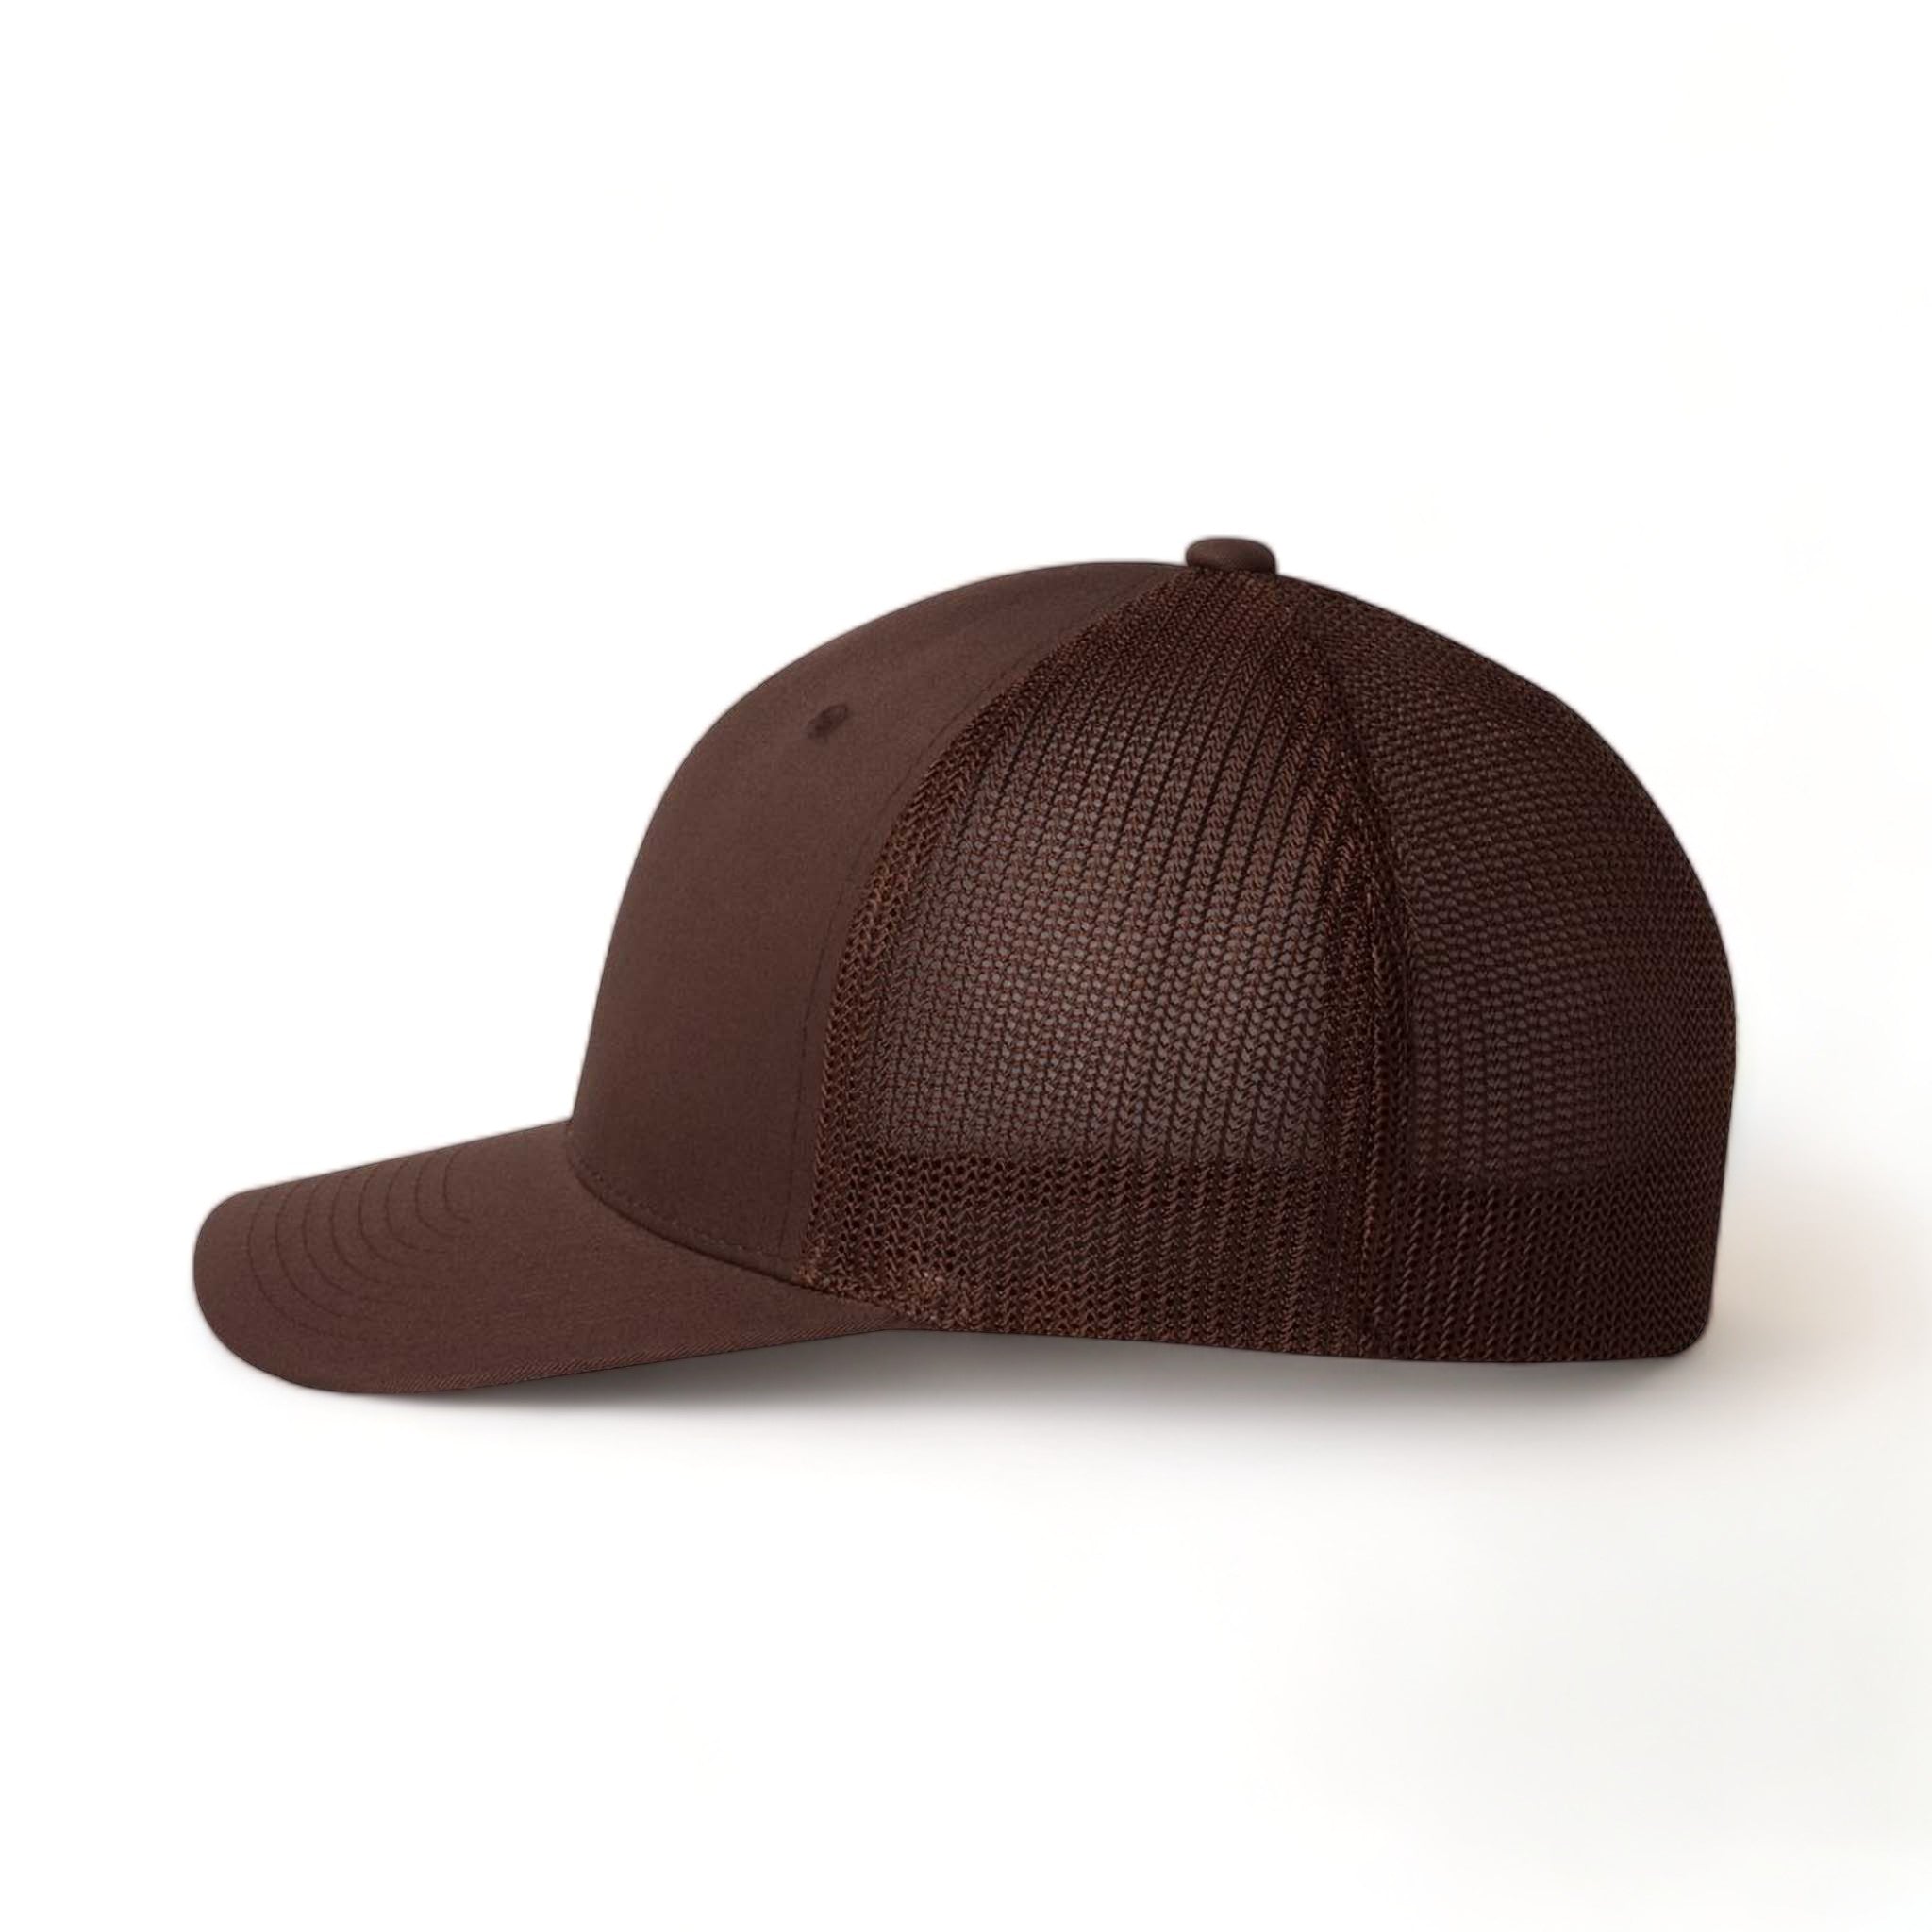 Side view of Flexfit 6511 custom hat in brown